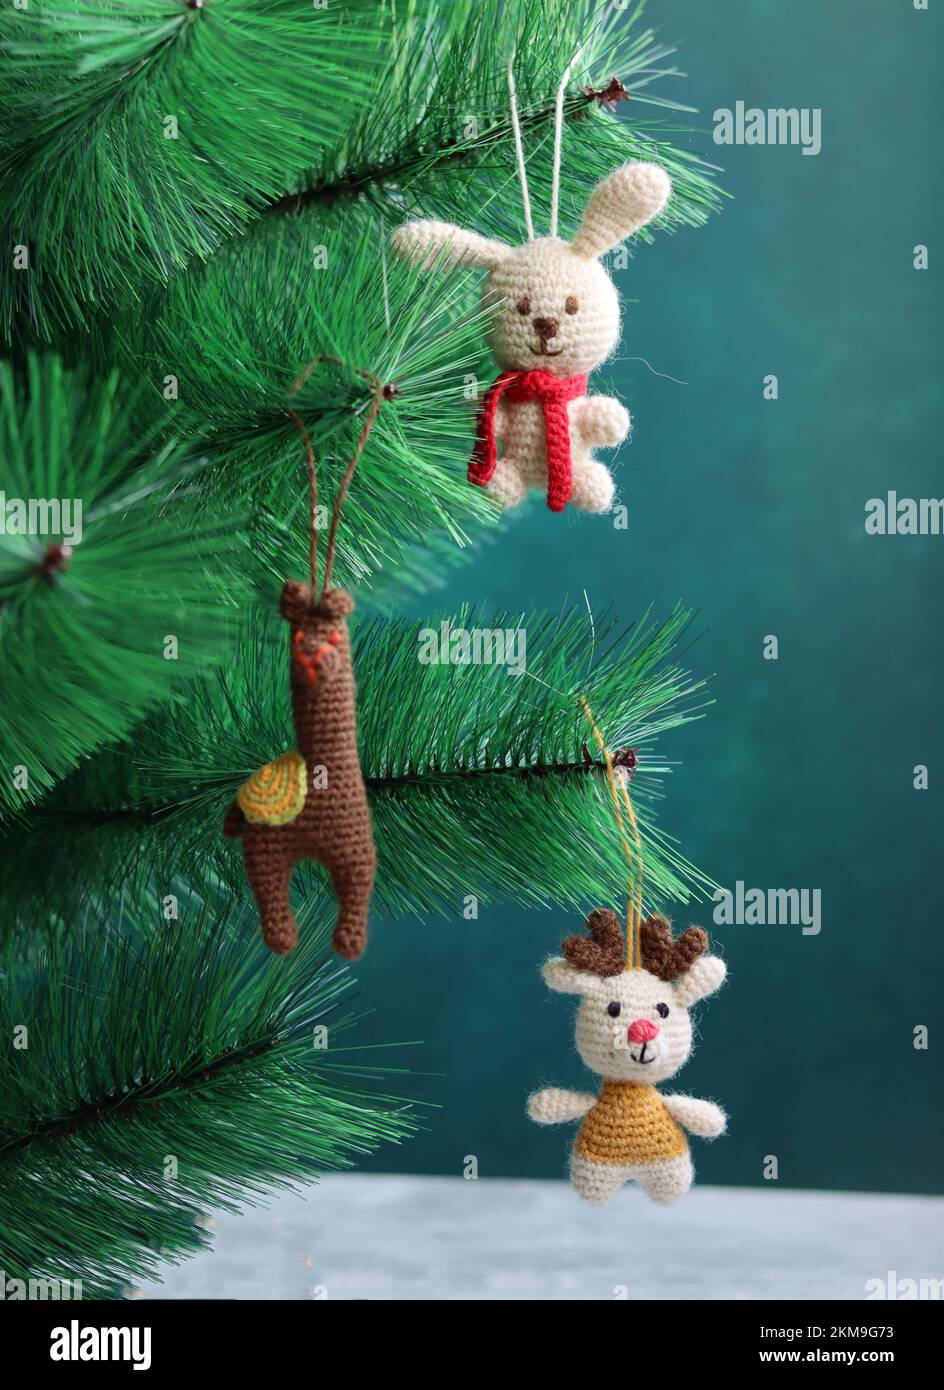 Gros plan sur des jouets en crochet colorés. Décorations de Noël faites à la main. Jouets amigurumi mignons. Banque D'Images